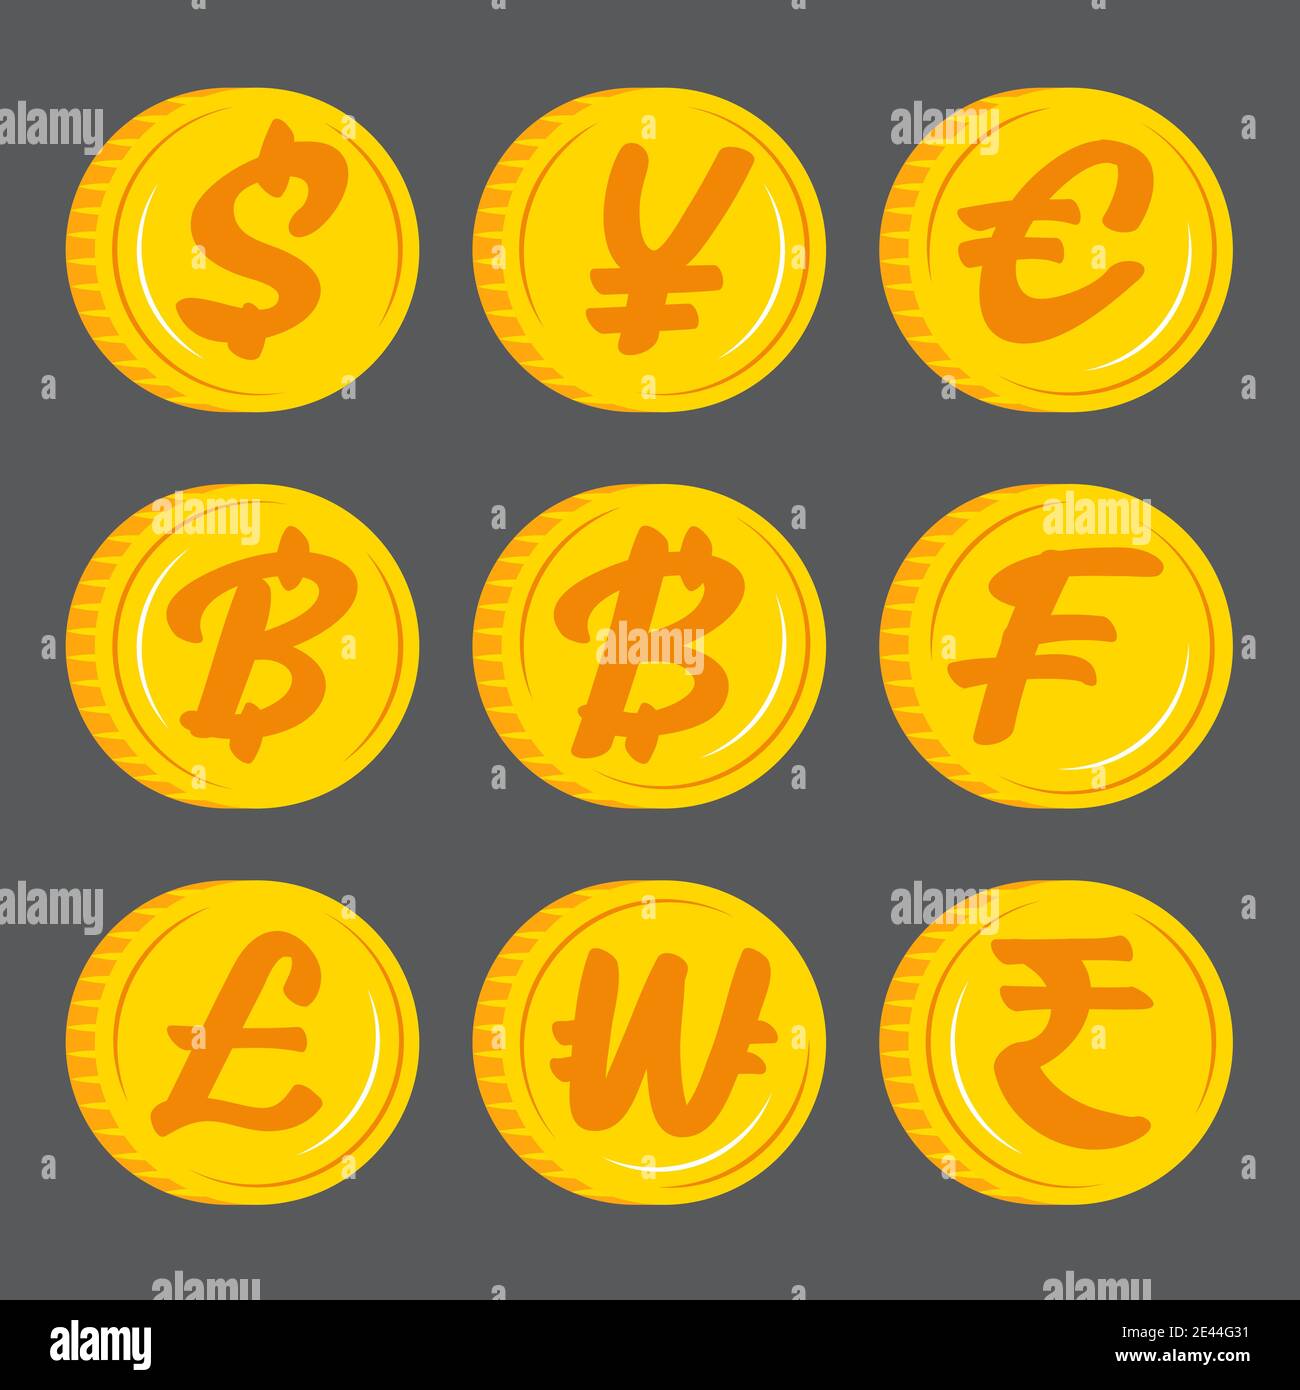 Goldmünzen mit Währungssymbol Symbol Vektor. Flaches Design. Stock Vektor